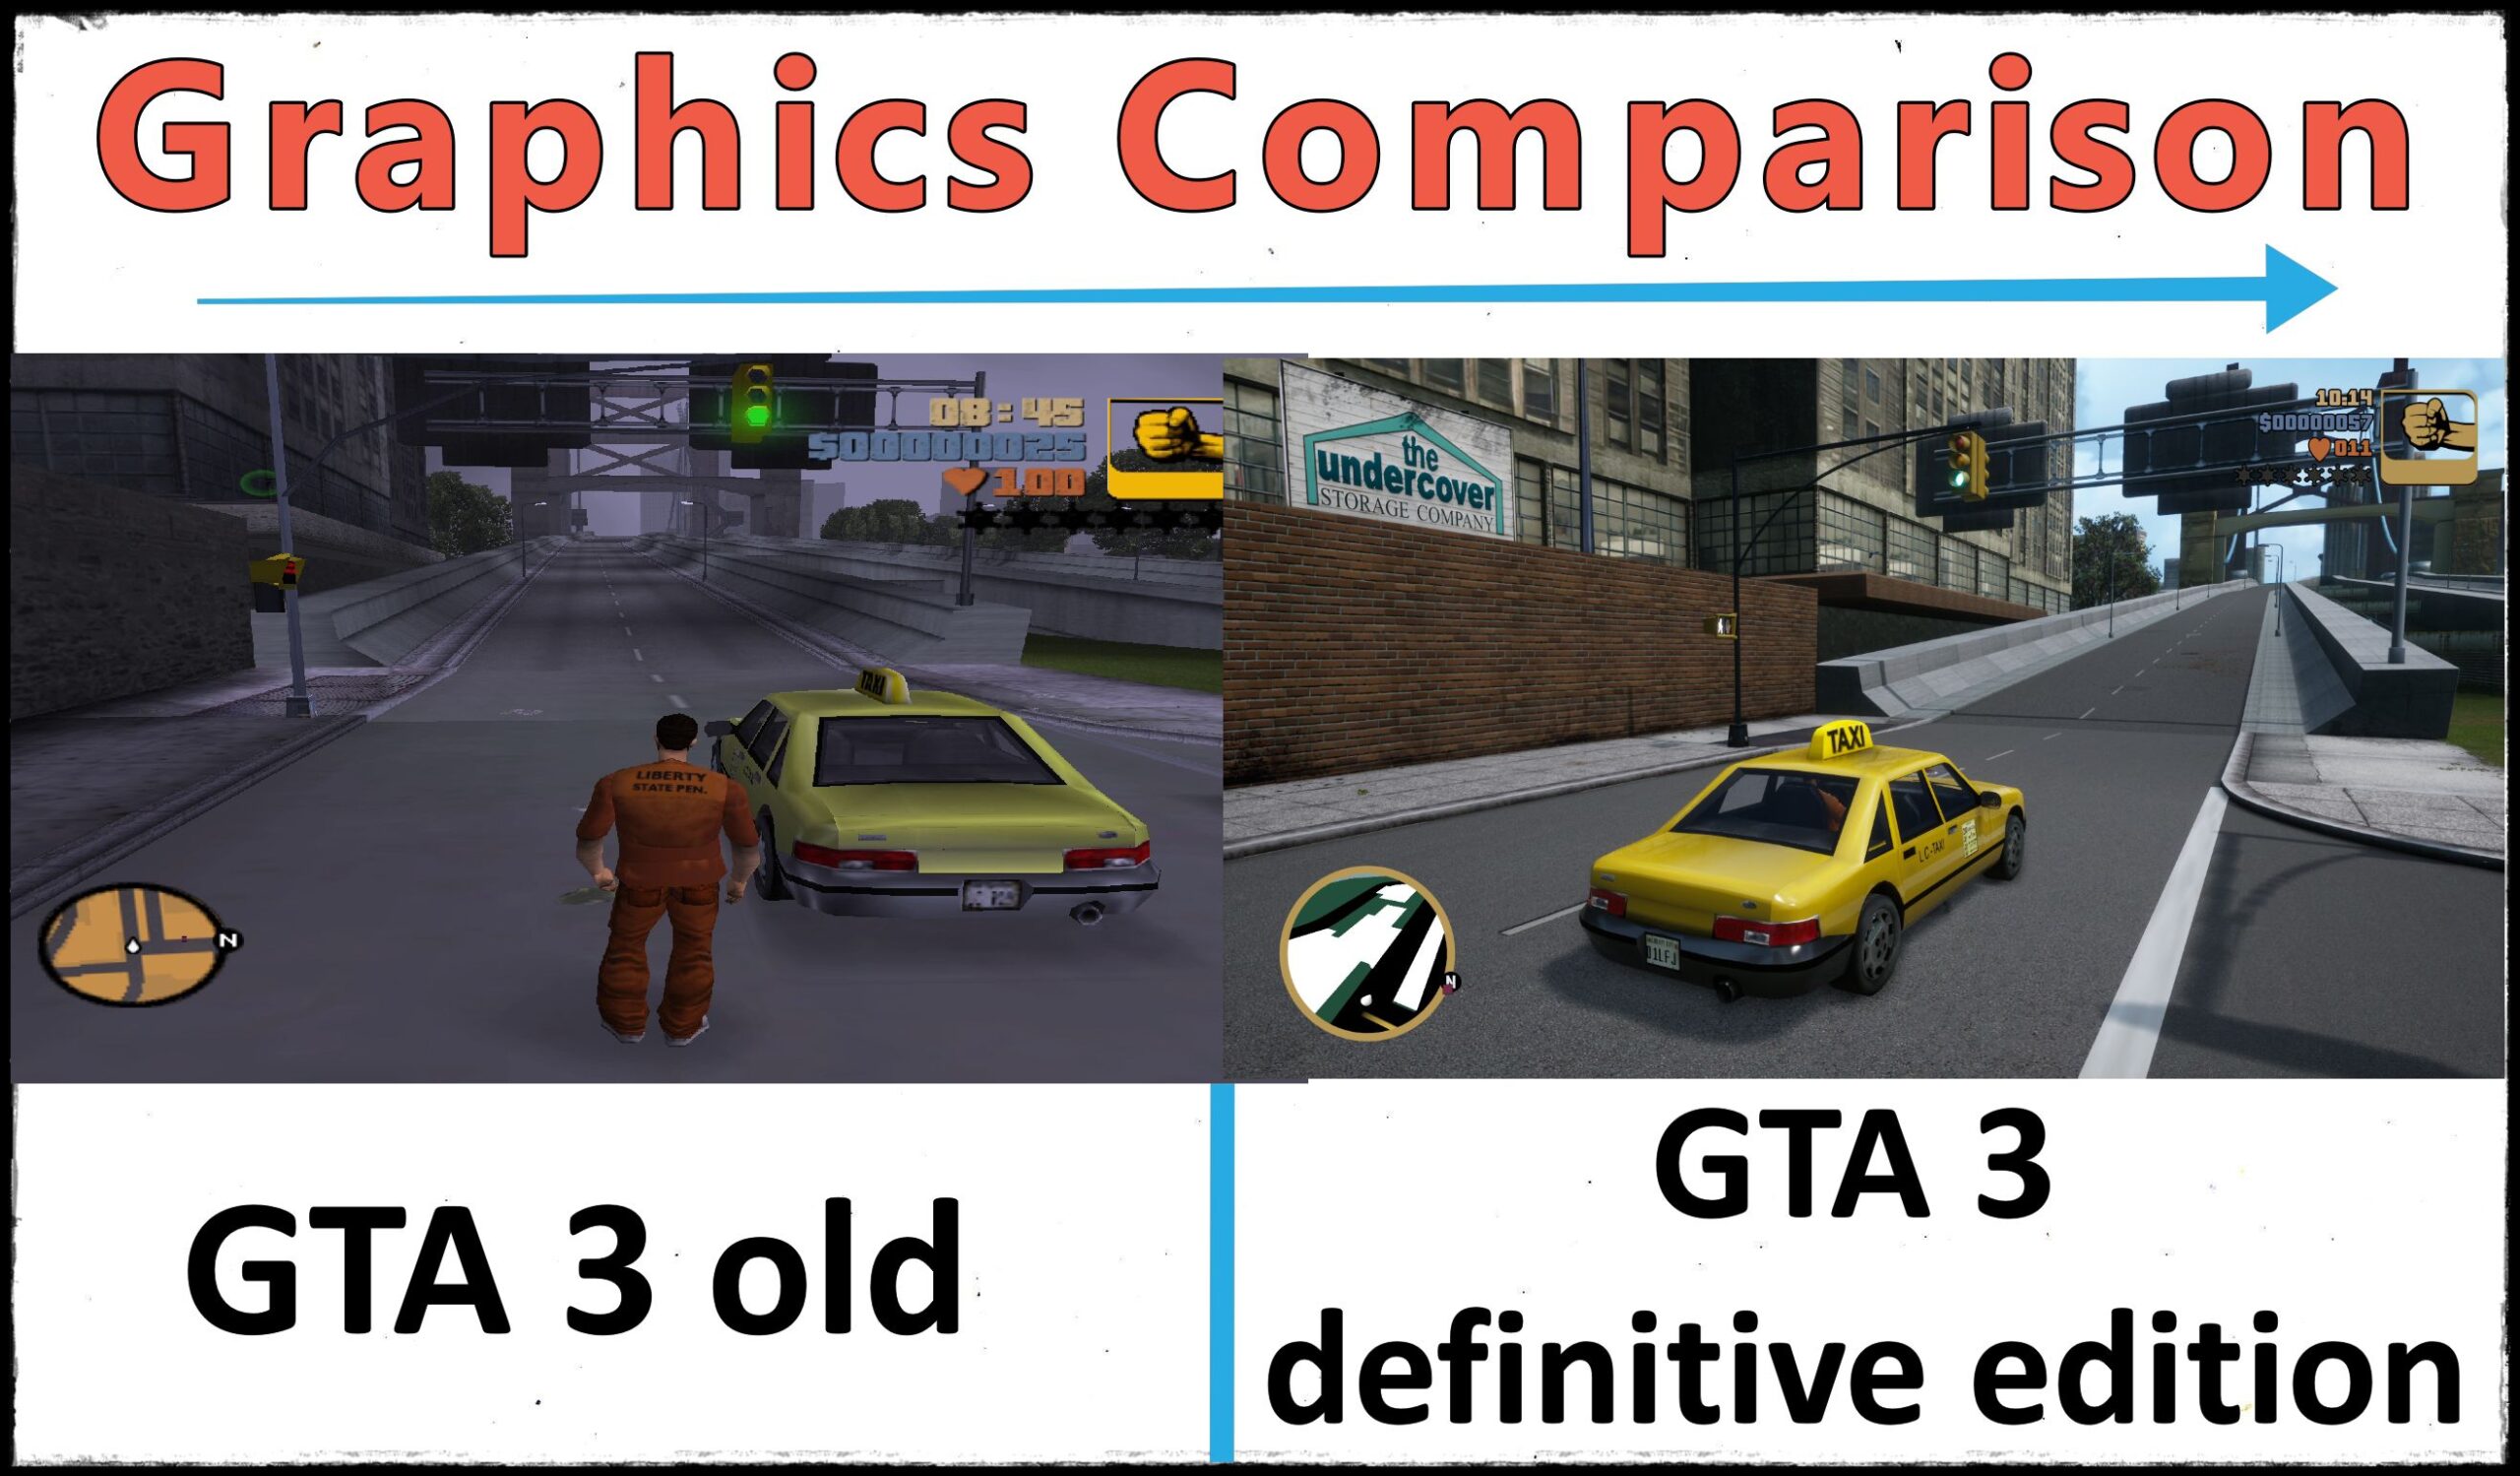 GTA 3 definitive edition vs original /old - Graphics Comparison